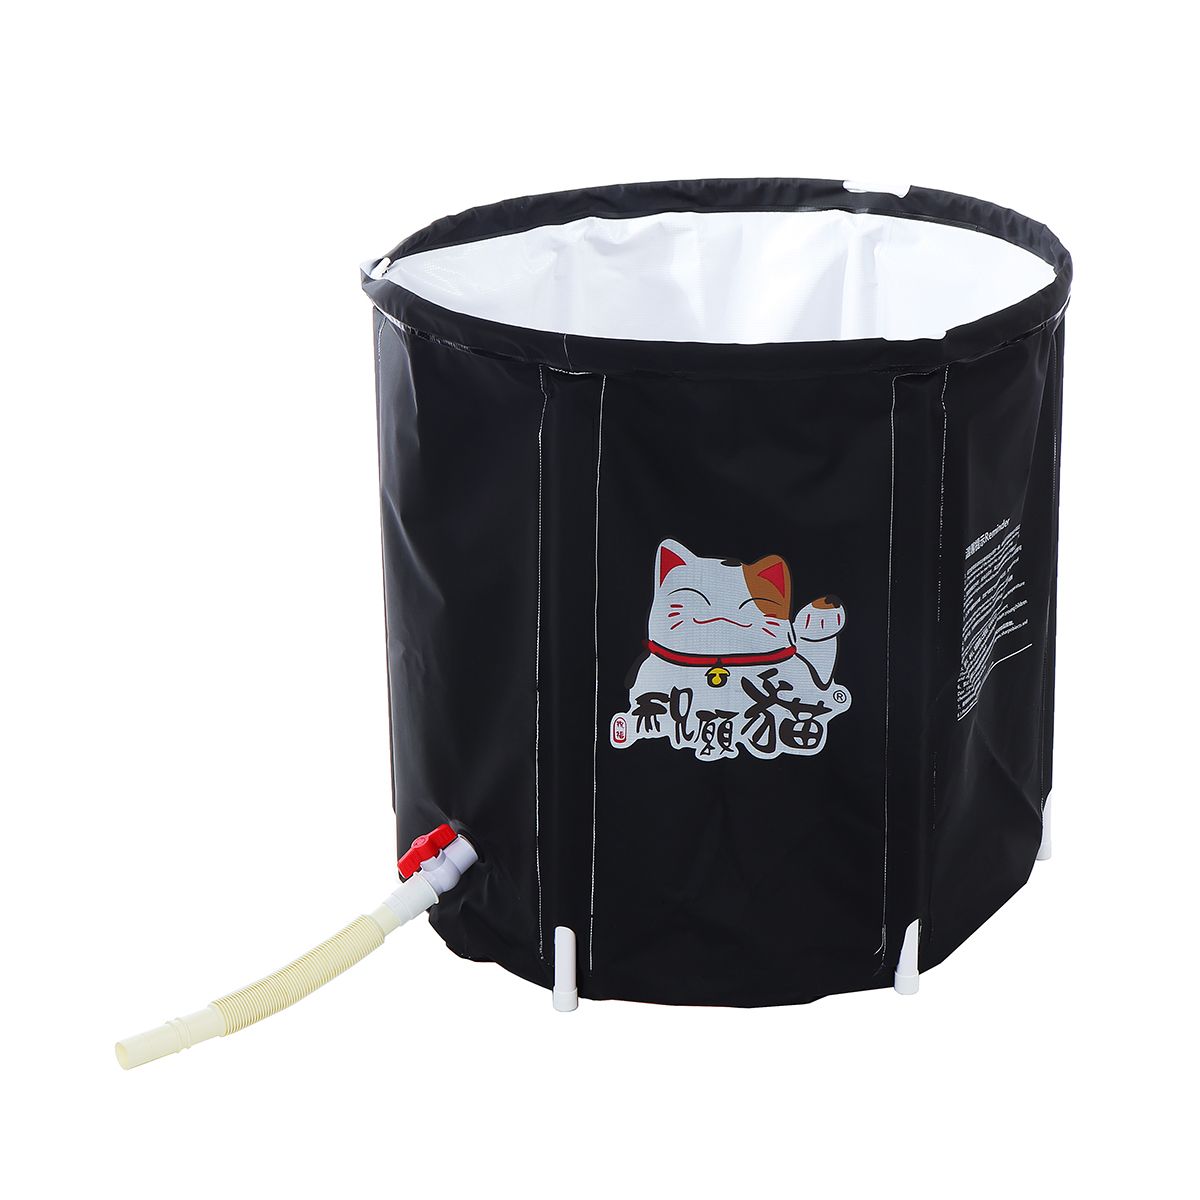 70cm-PVC-Bathtub-Portable-Water-Tub-Adult-Spa-Bath-Bucket-Folding-Bag-Outdoor-1582940